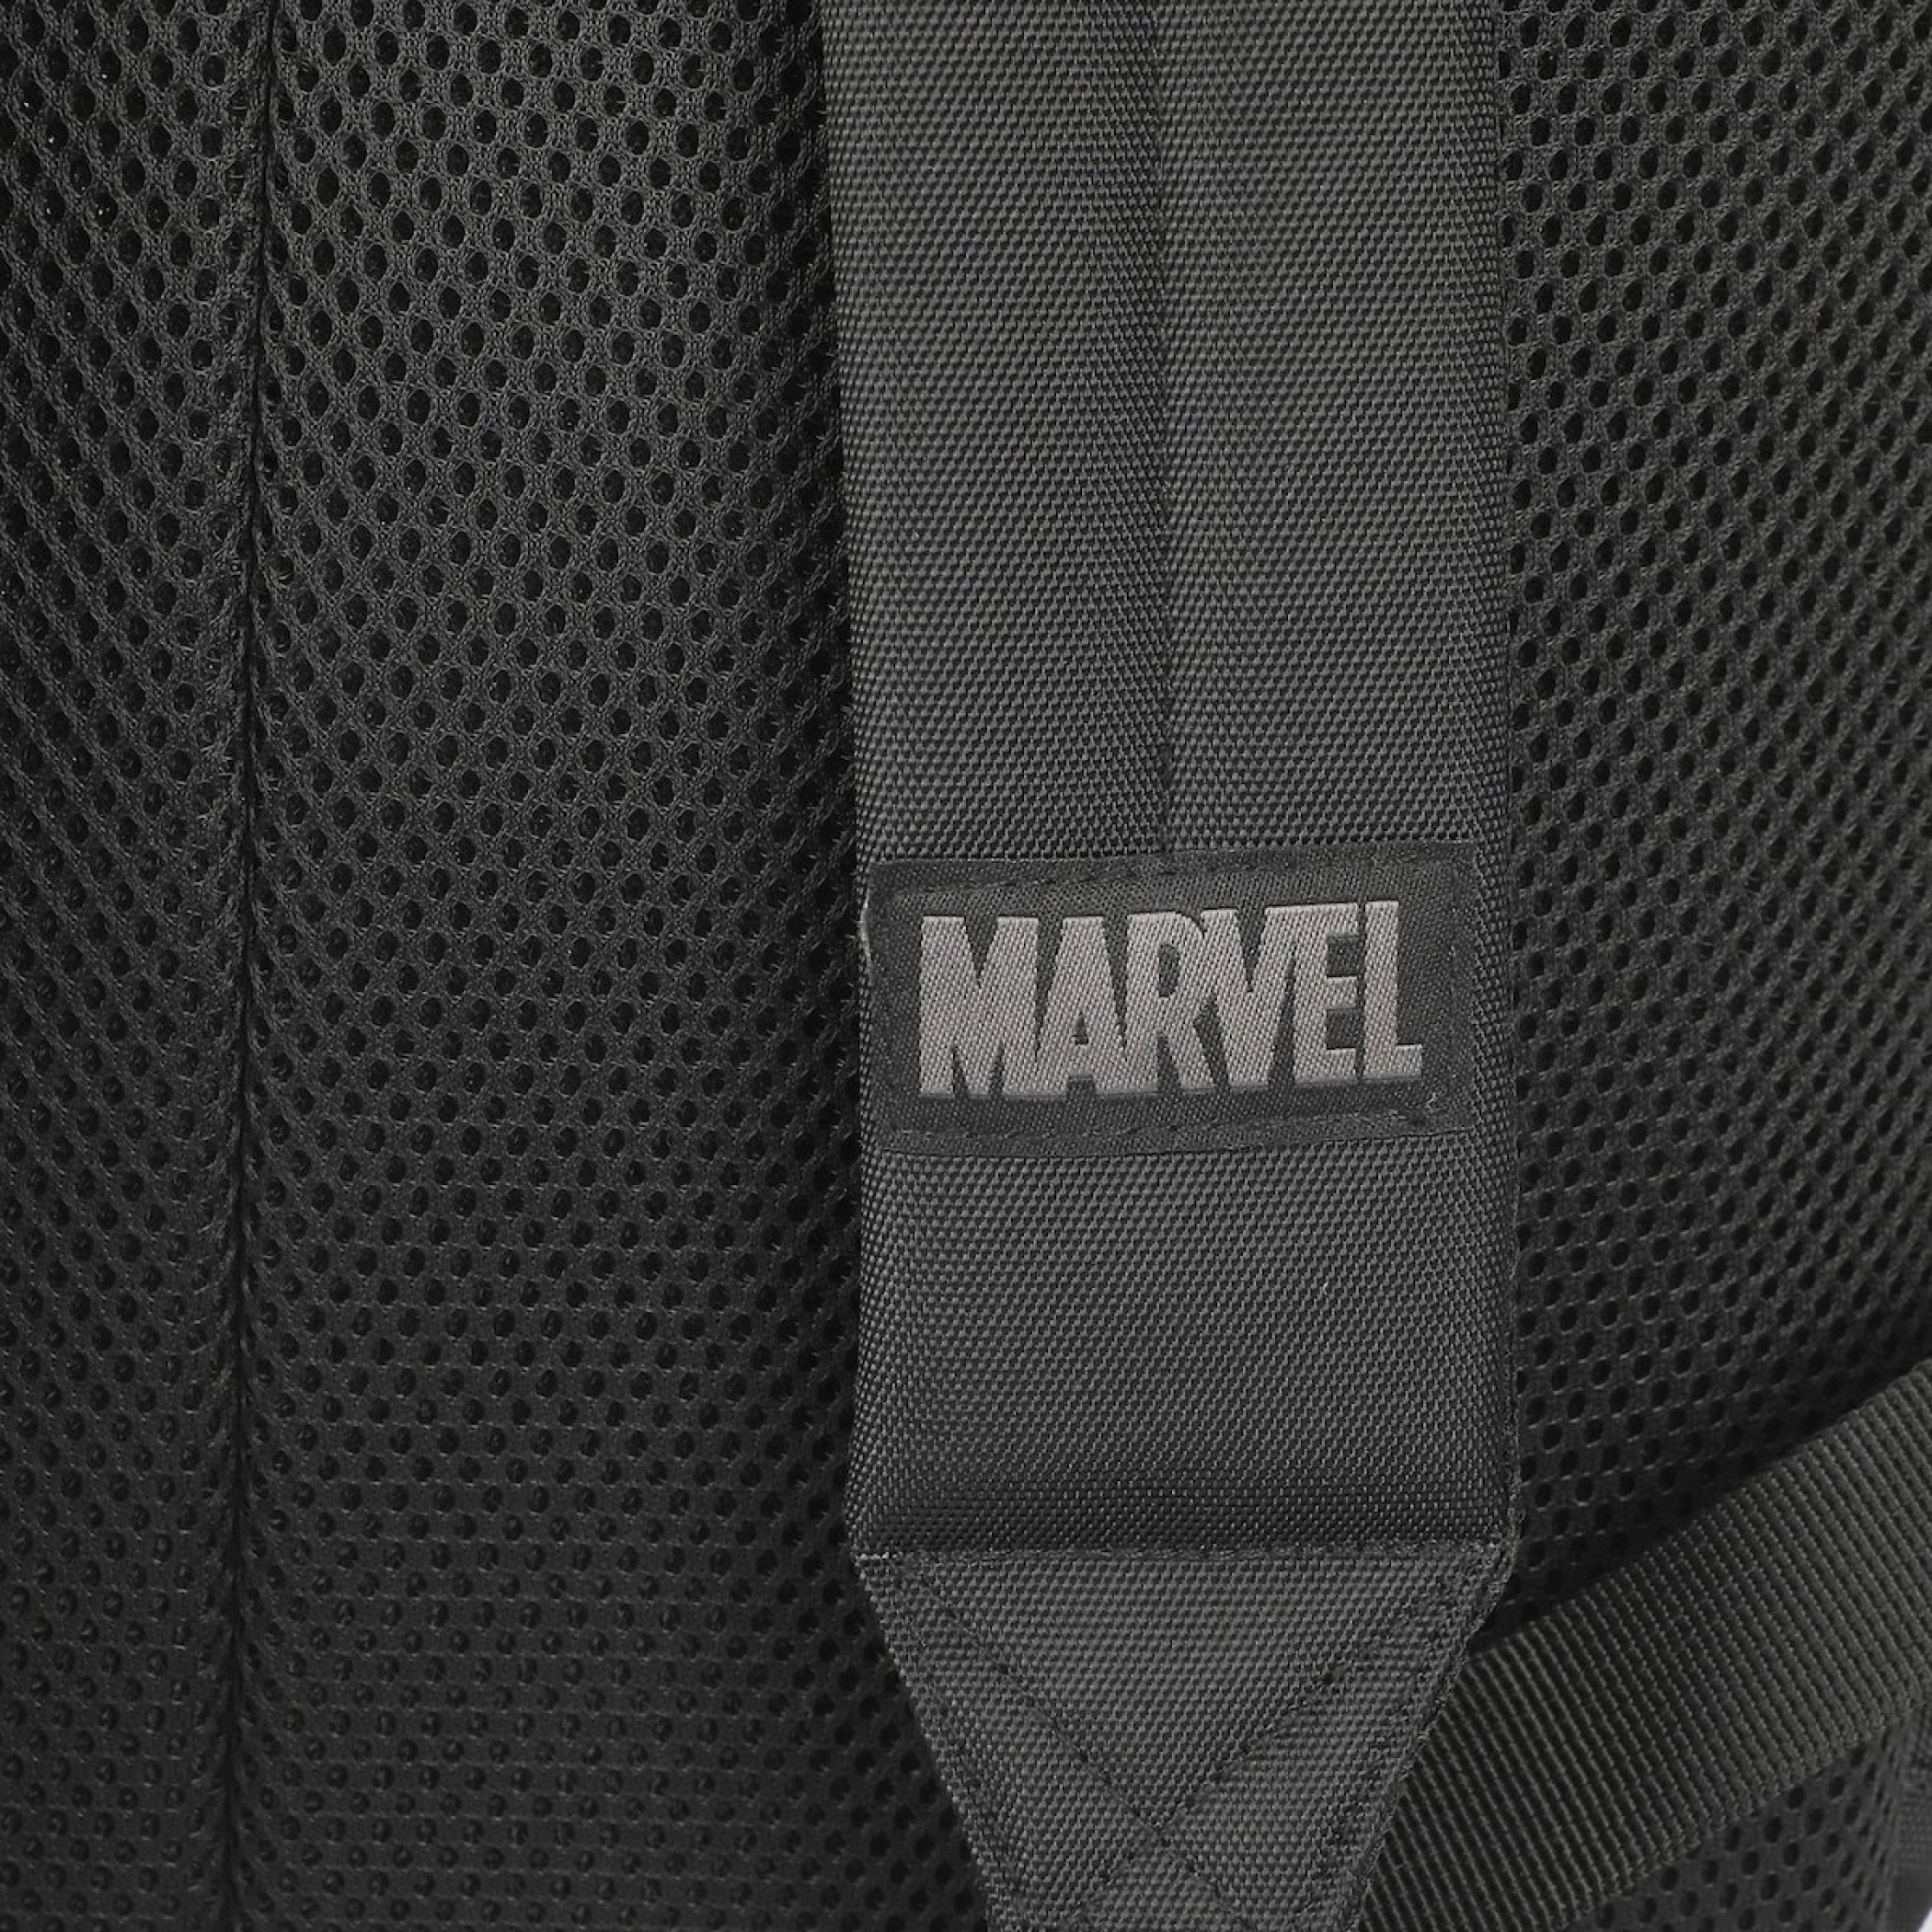 Spider-Man Miles Morales Symbol Laptop Backpack